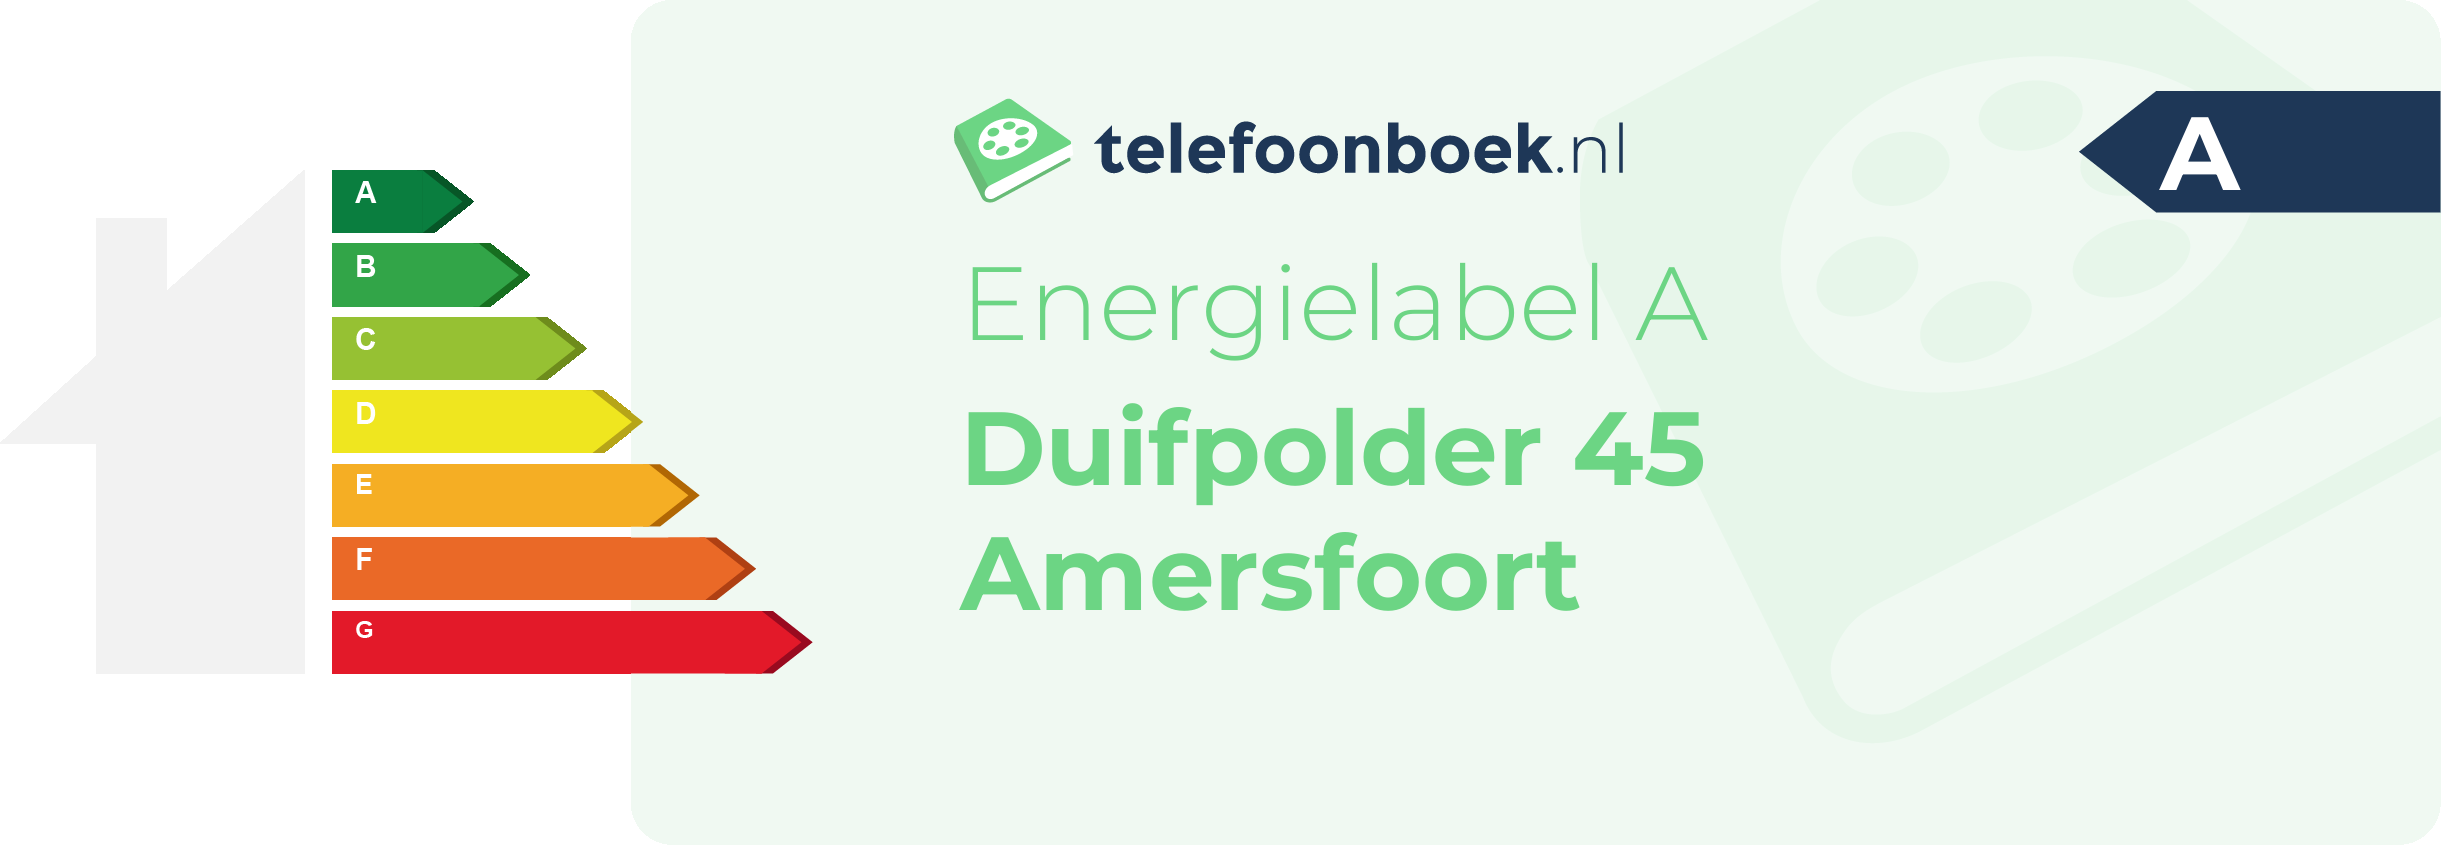 Energielabel Duifpolder 45 Amersfoort